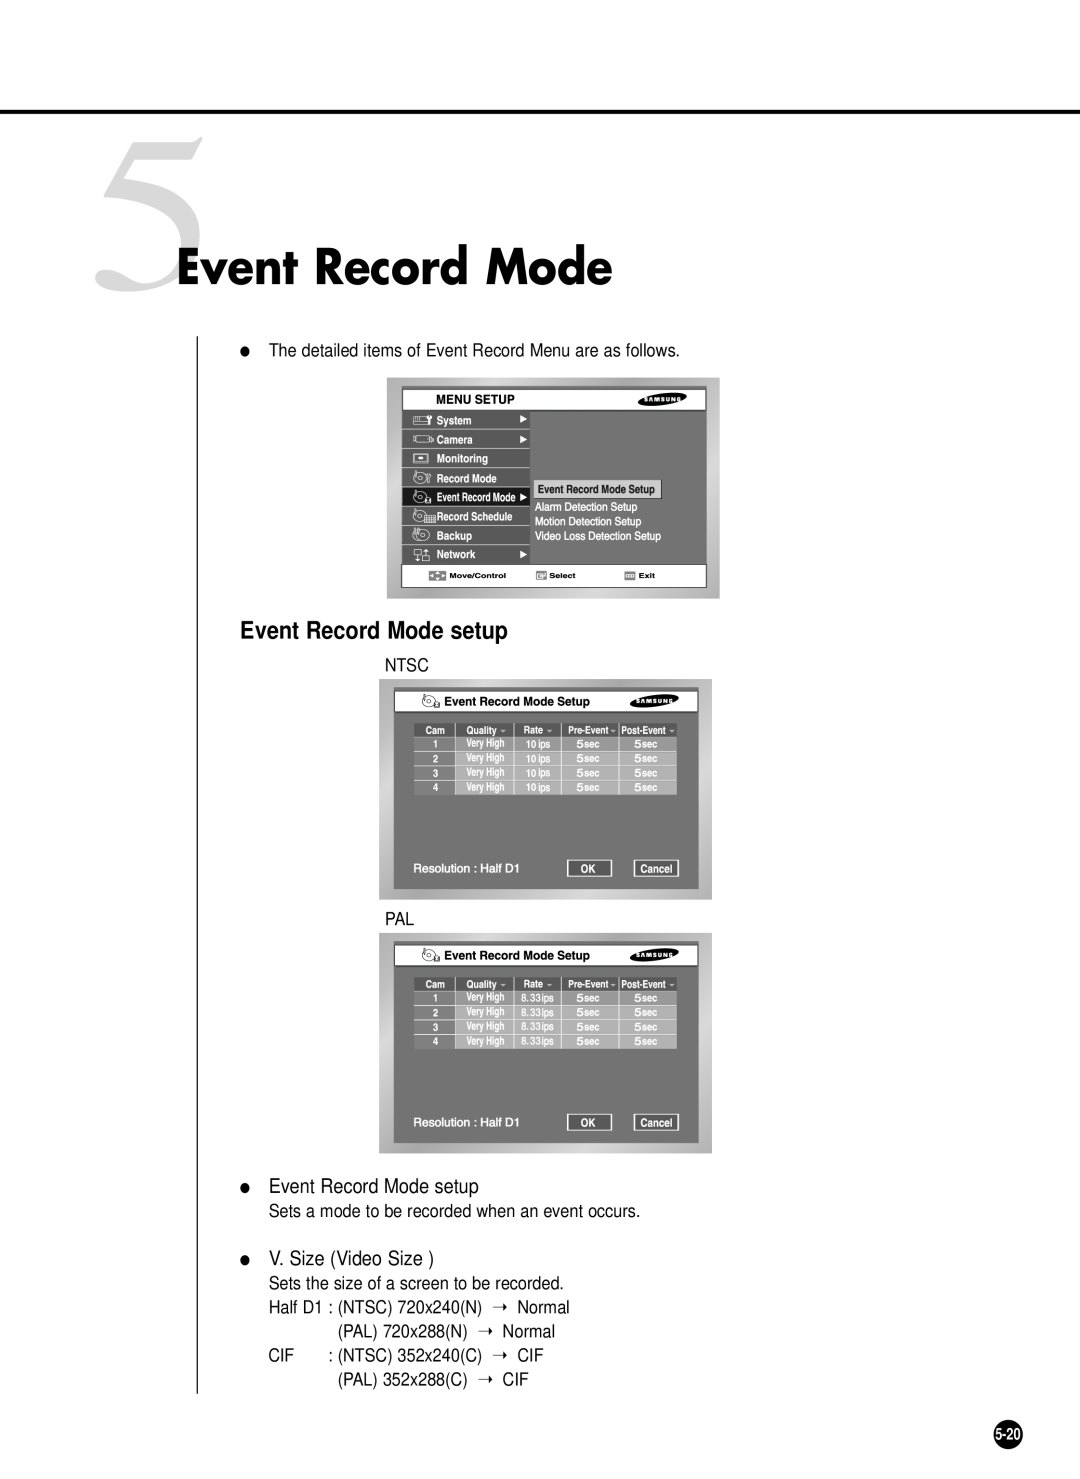 Samsung SHR-2042P 5Event Record Mode, Event Record Mode setup, PAL 720x288N, Normal, NTSC 352x240C CIF, PAL 352x288C, 5-20 